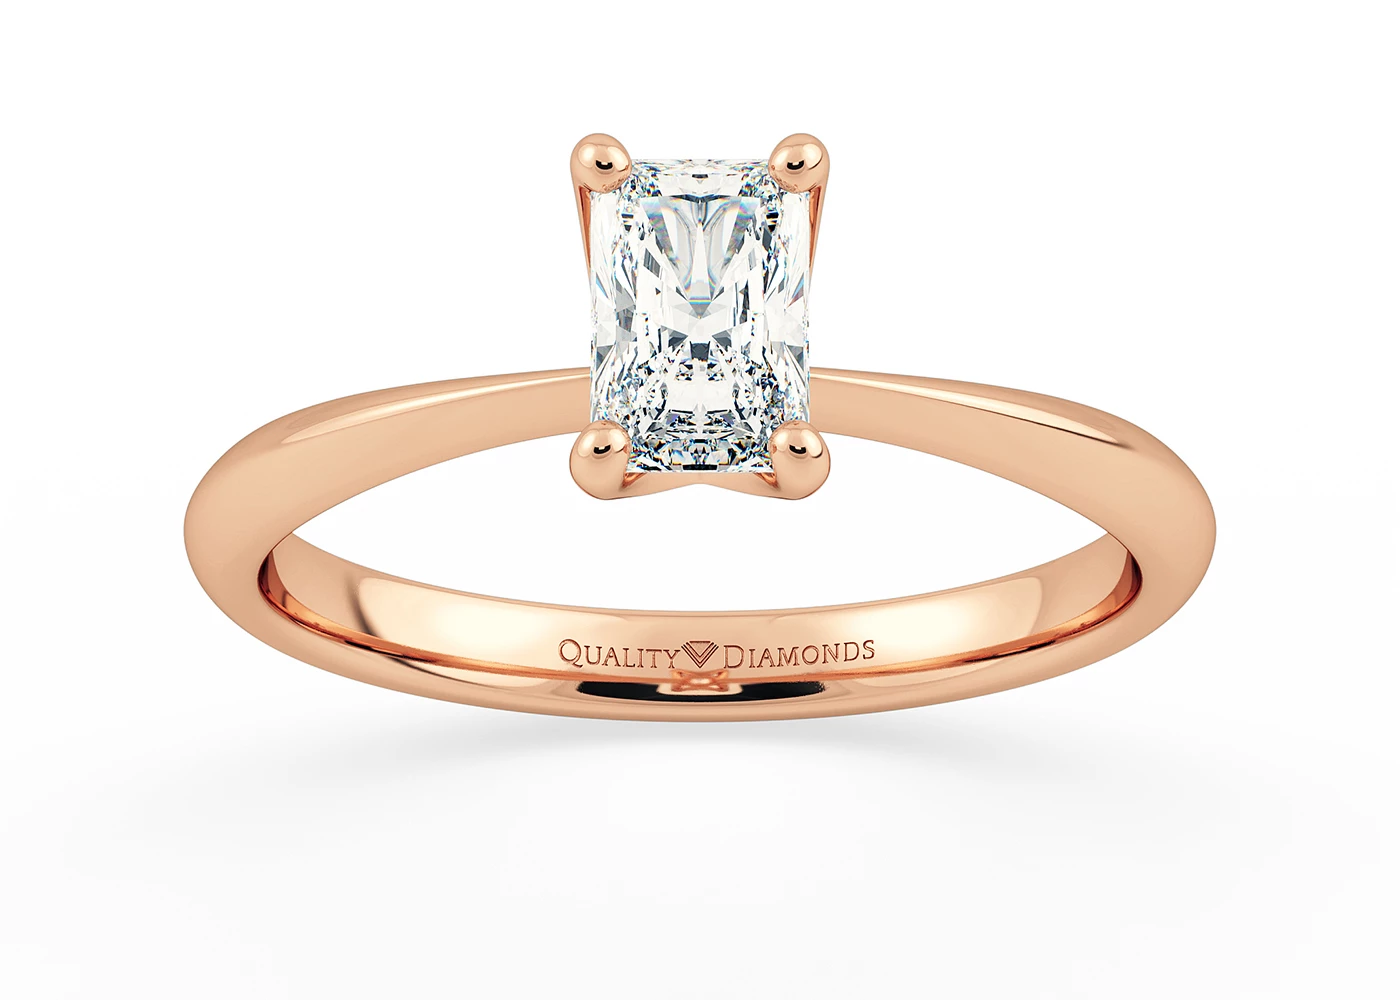 Radiant Amorette Diamond Ring in 18K Rose Gold